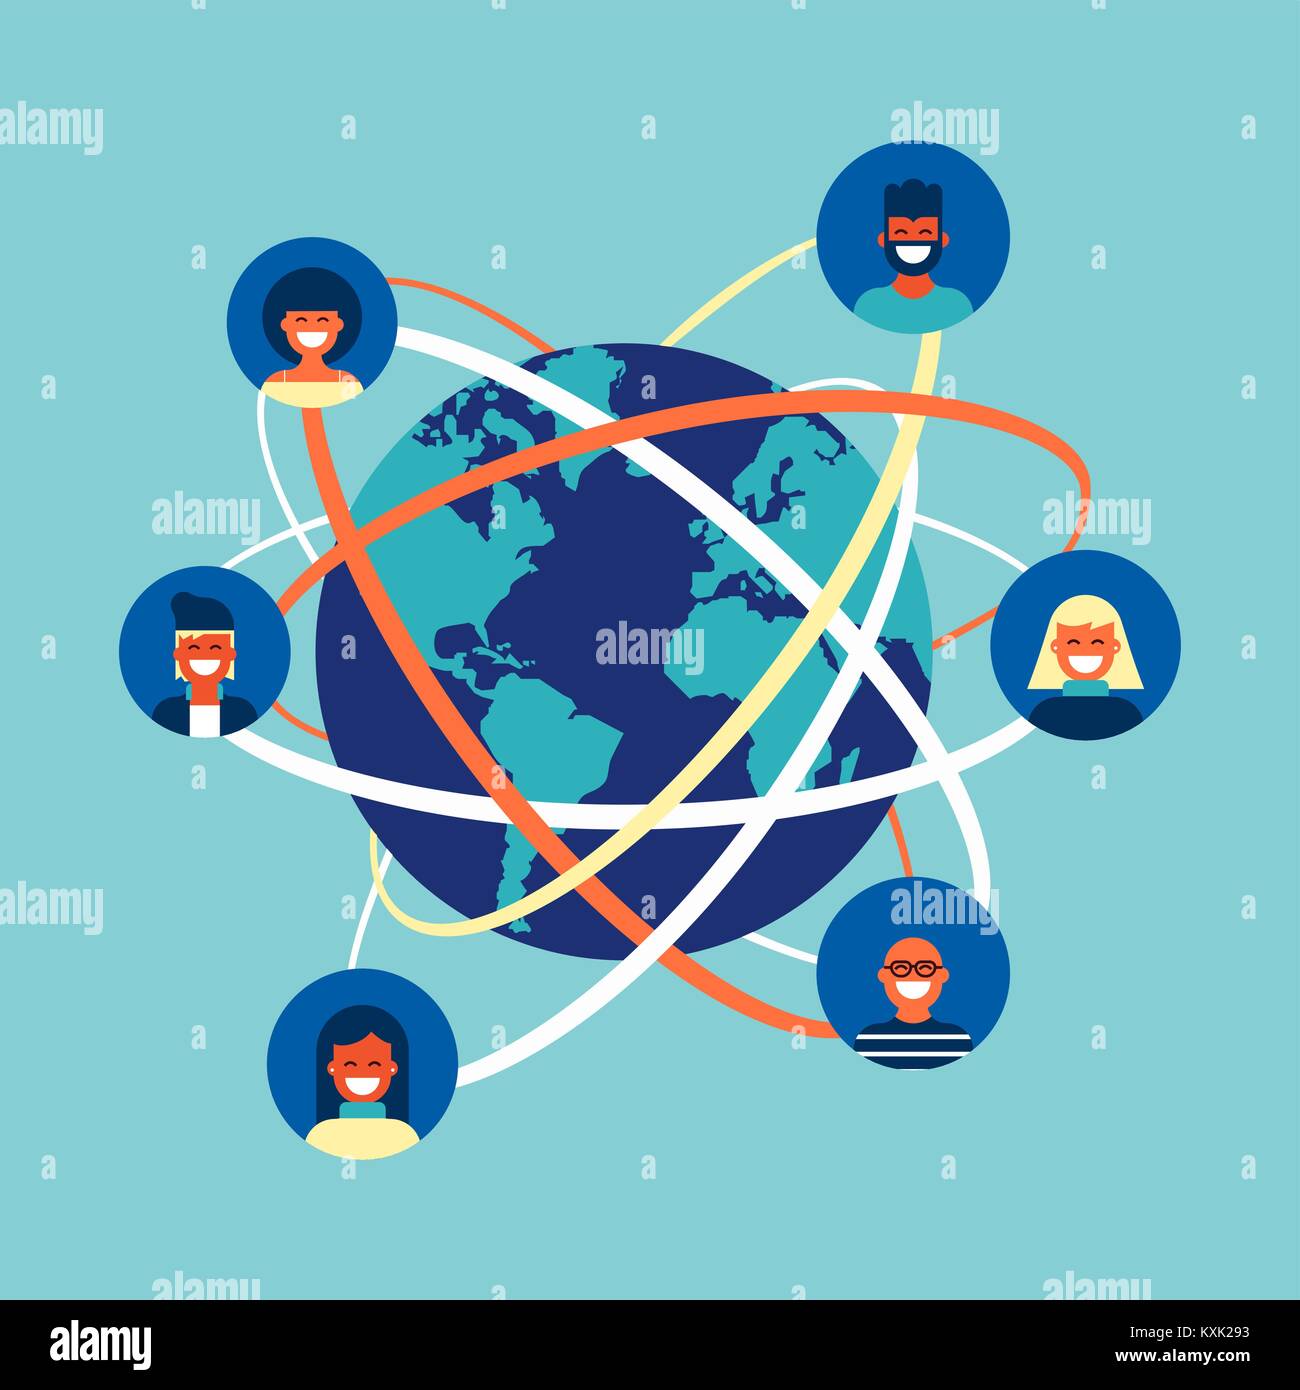 Soziales Netzwerk Welt Verbindung Konzept Abbildung. Team von verschiedenen Leuten online tun Aktivitäten im Internet weltweit. EPS 10 Vektor. Stock Vektor